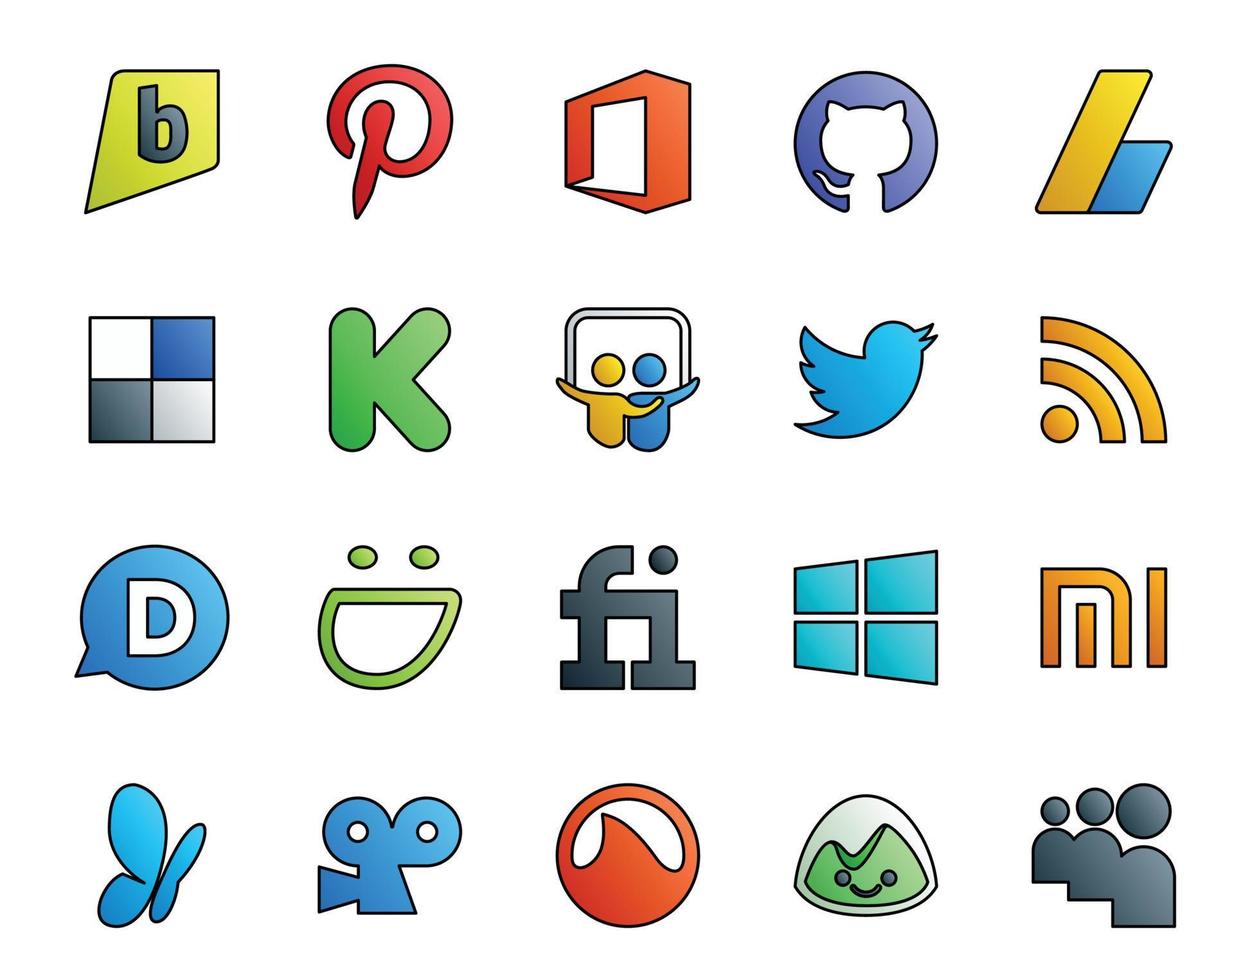 Paquete de 20 íconos de redes sociales que incluye msn windows slideshare fiverr disqus vector